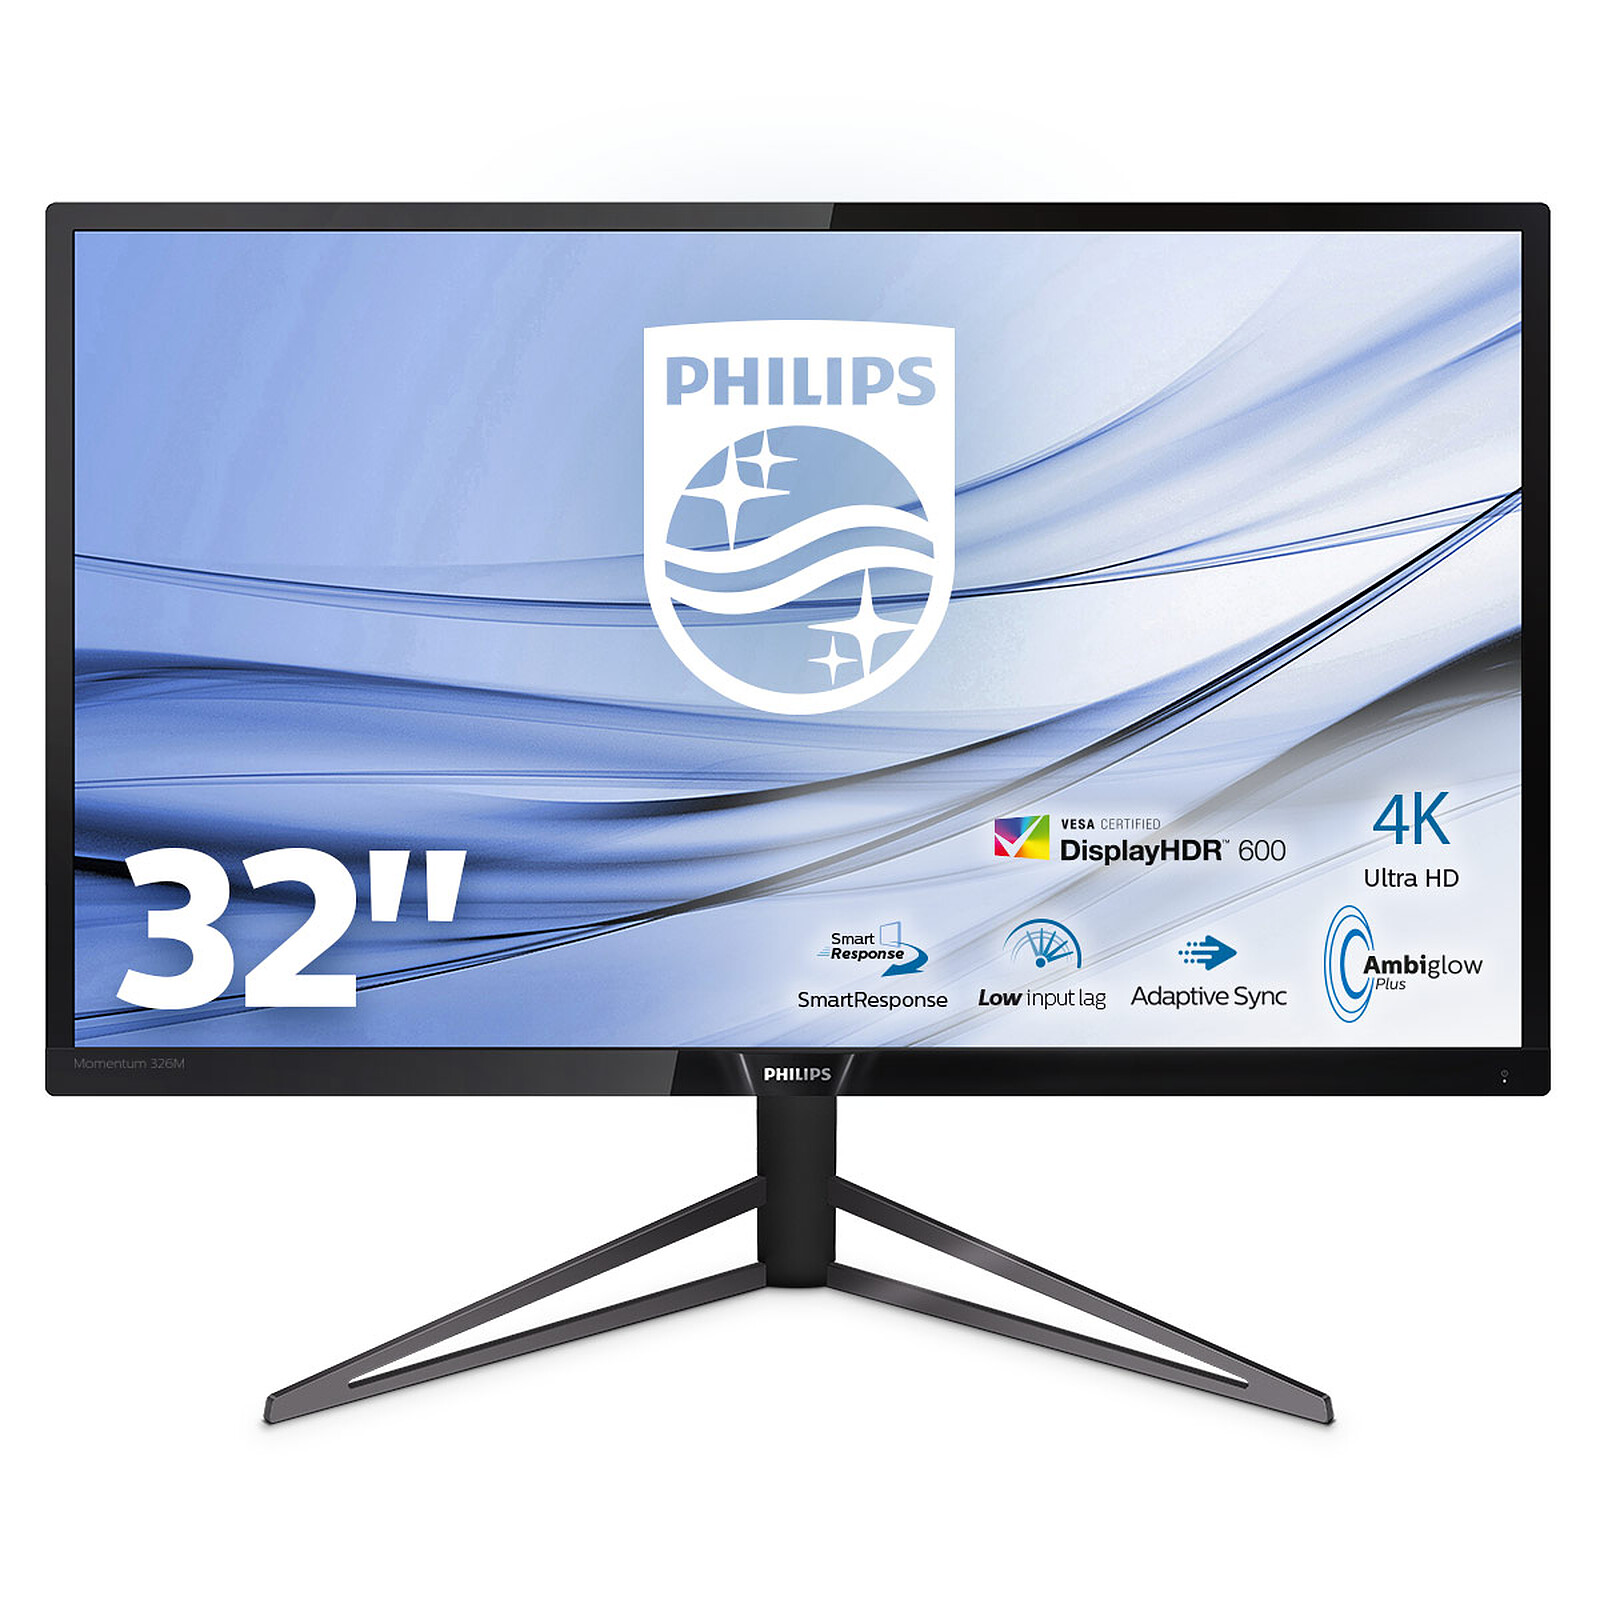 Philips presenta una nueva pantalla LCD de 28 pulgadas con panel MVA